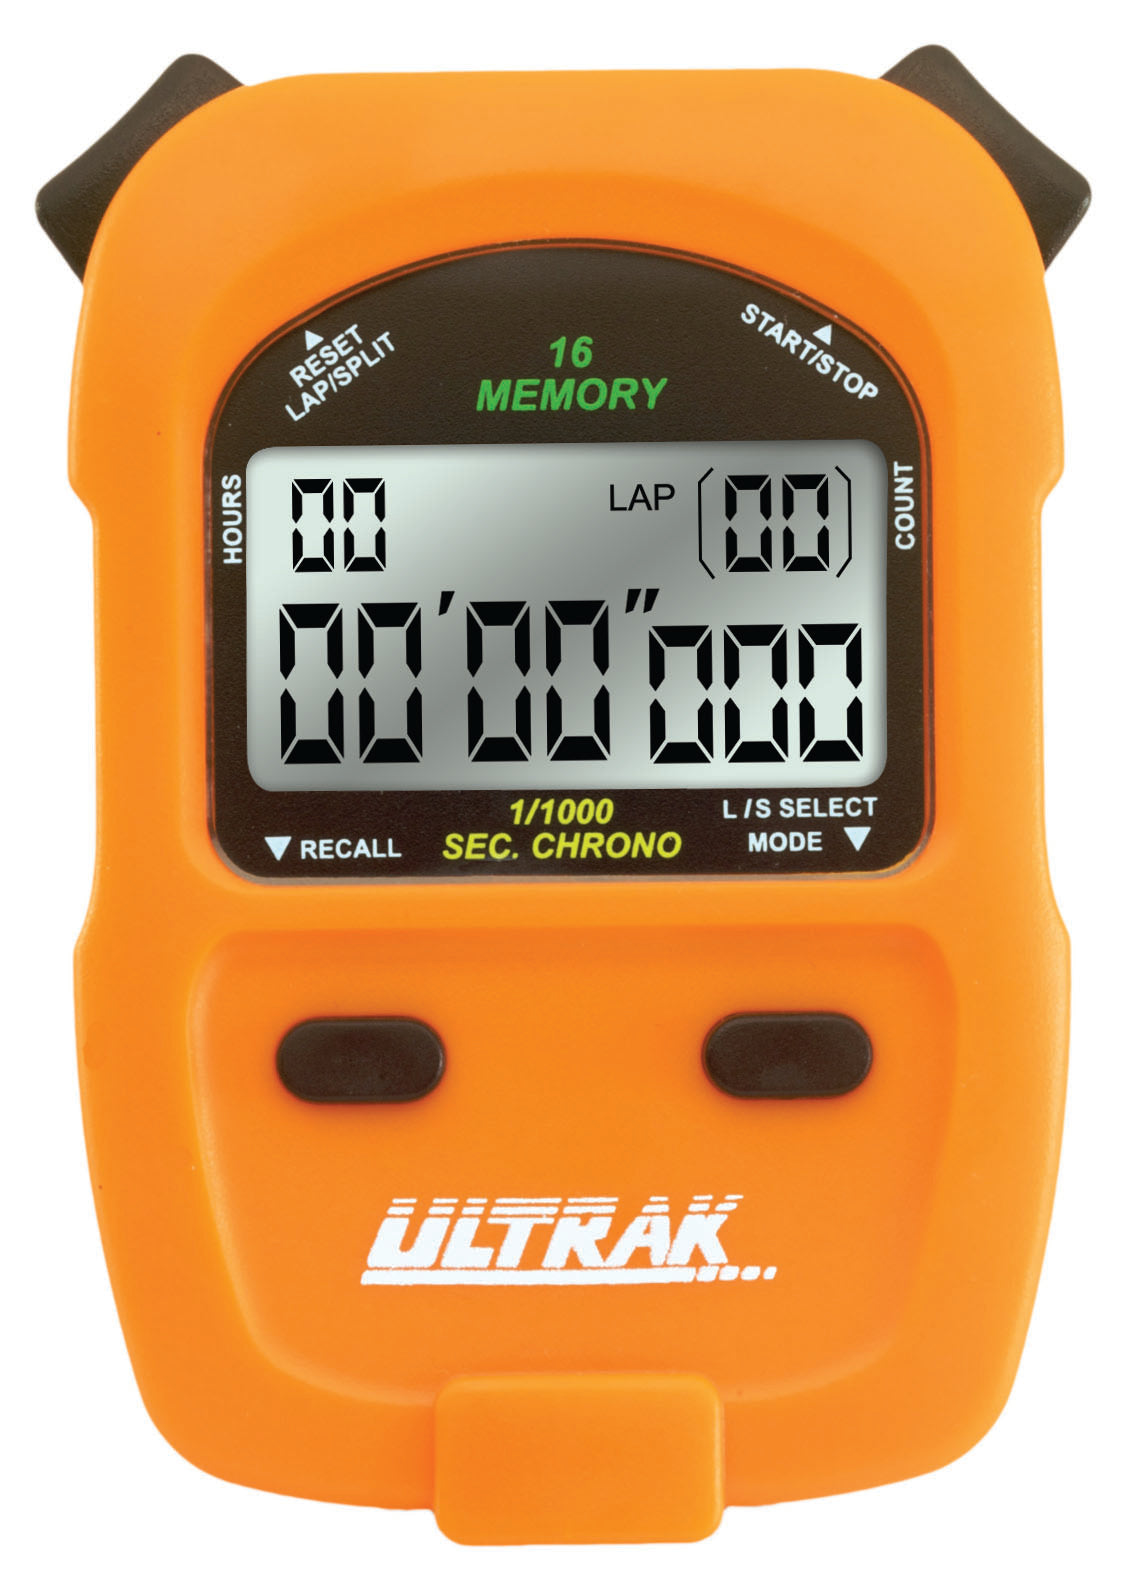 ULTRAK 460 - 16 Lap Memory-2 Line Display